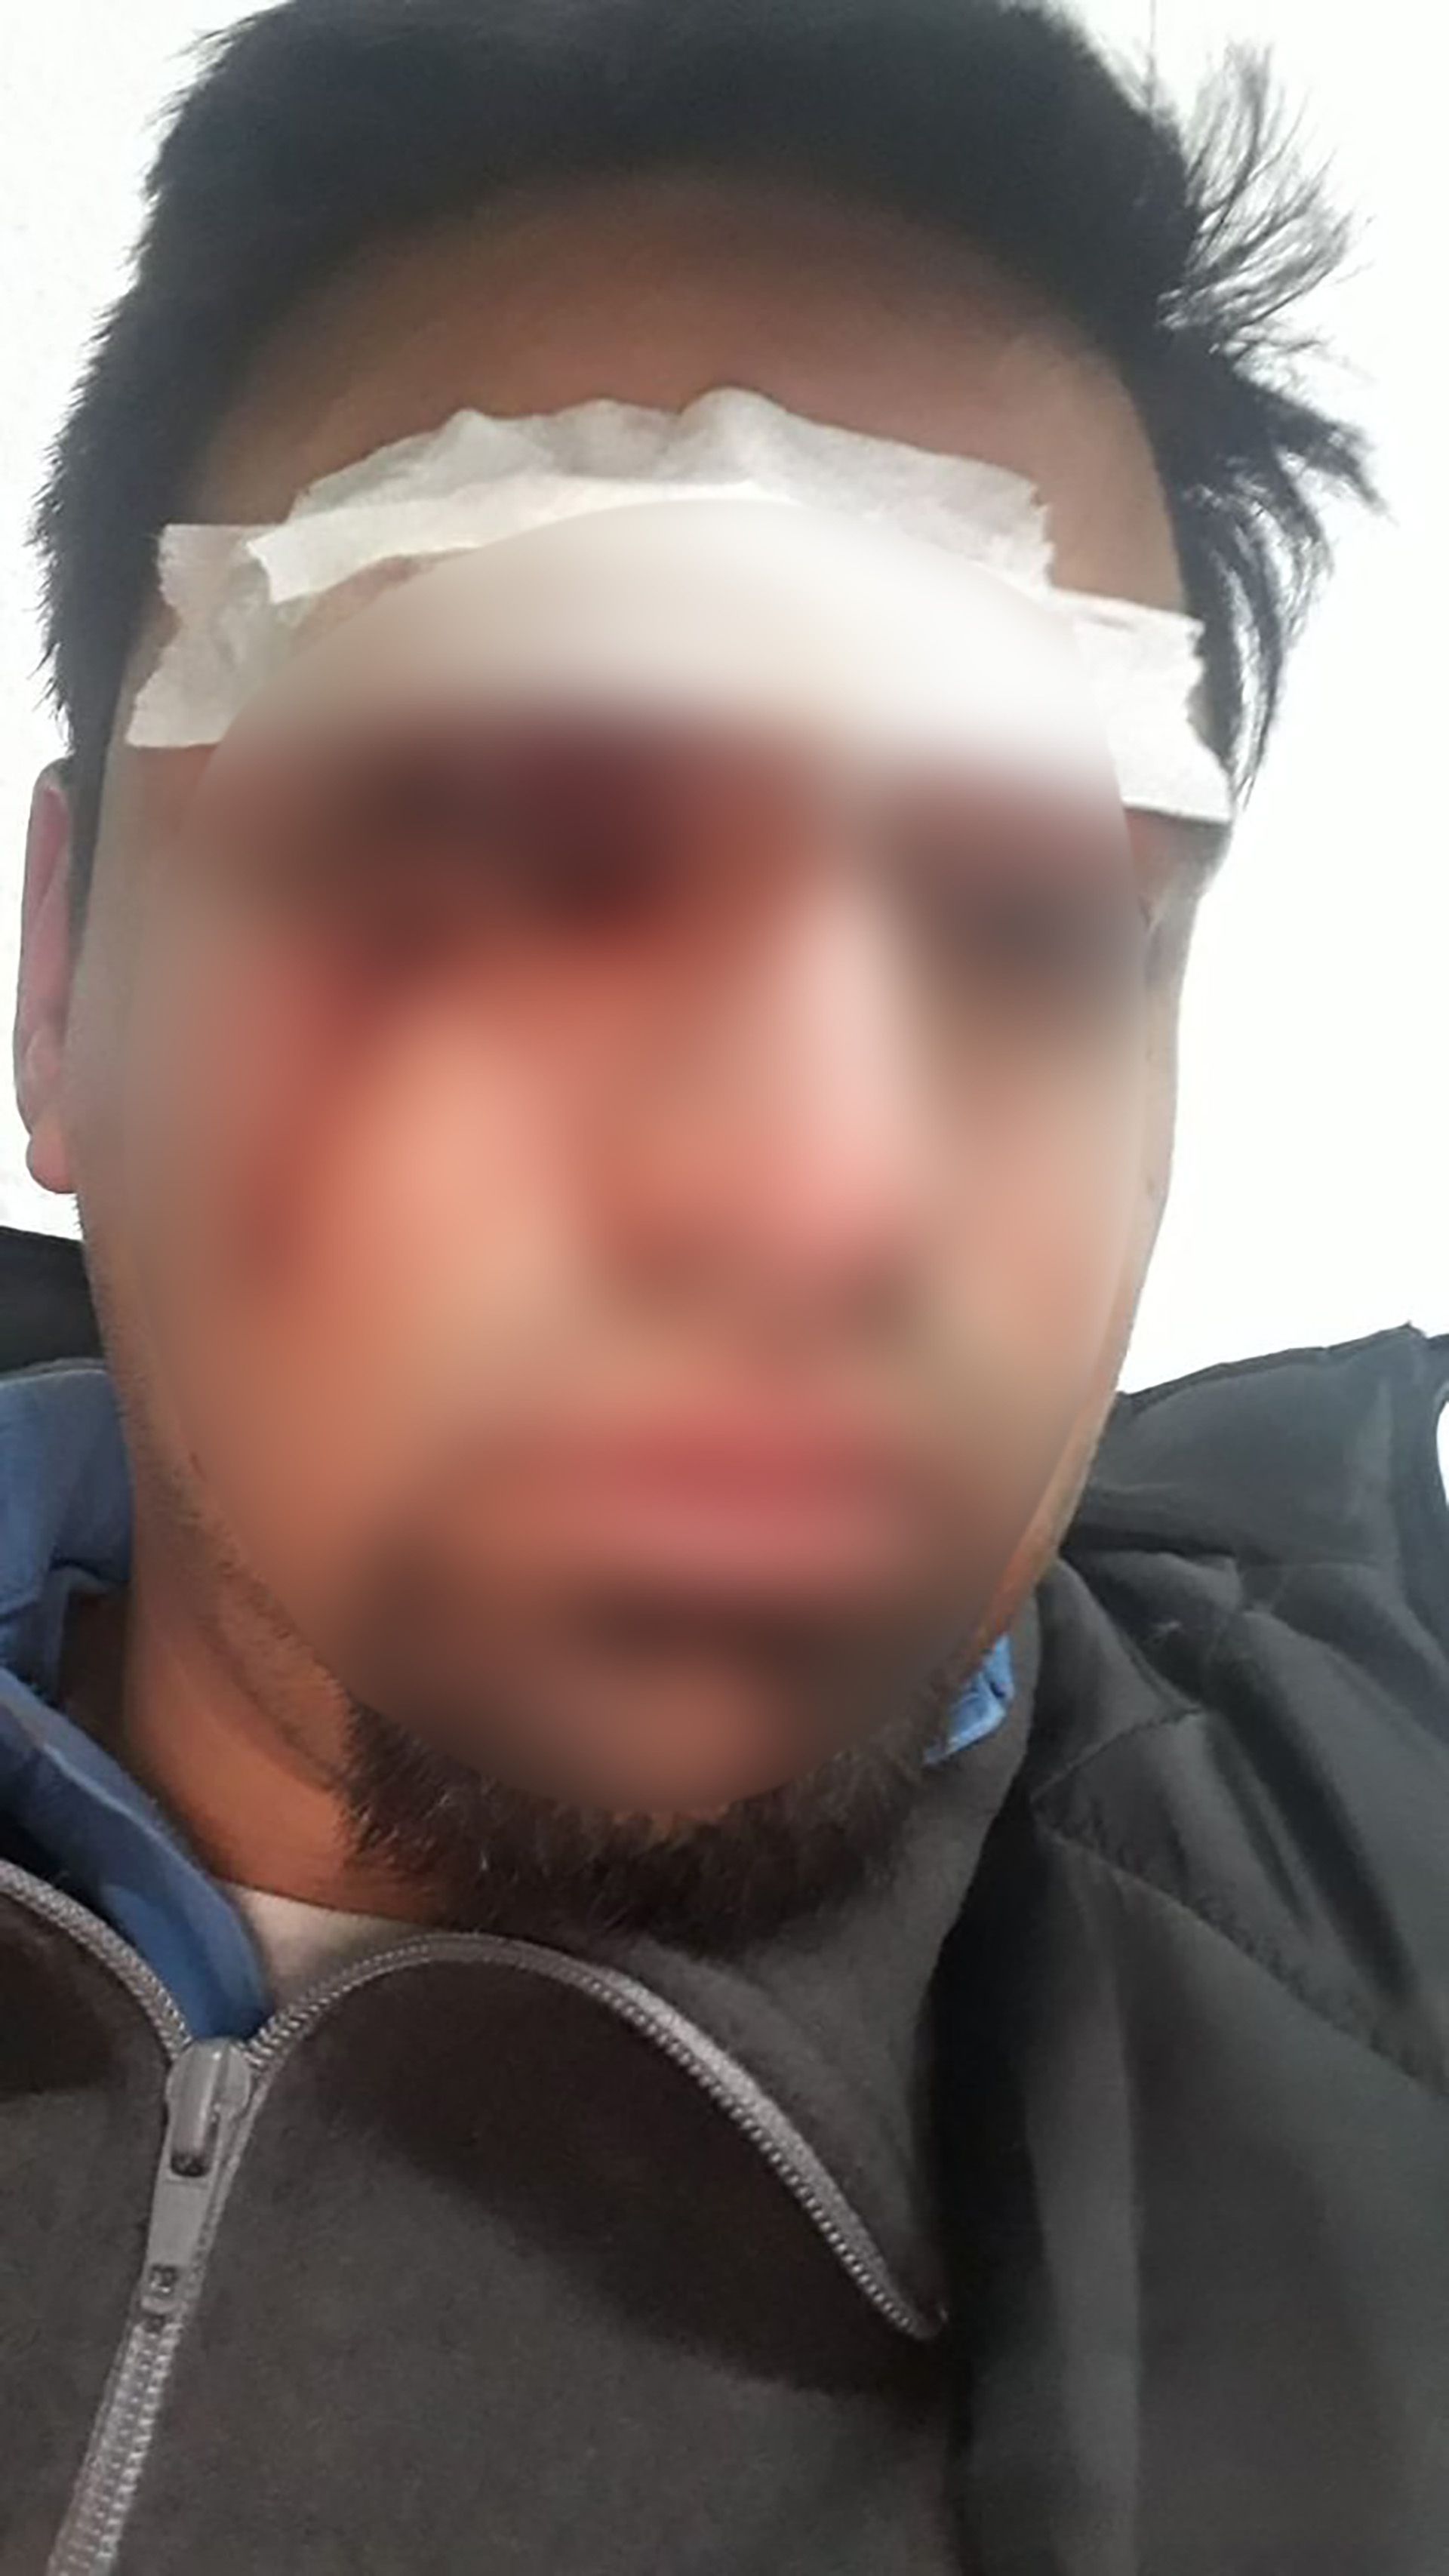 El conductor, que también usaba anteojos, sufrió graves cortes en el ojo y tiene comprometida la retina